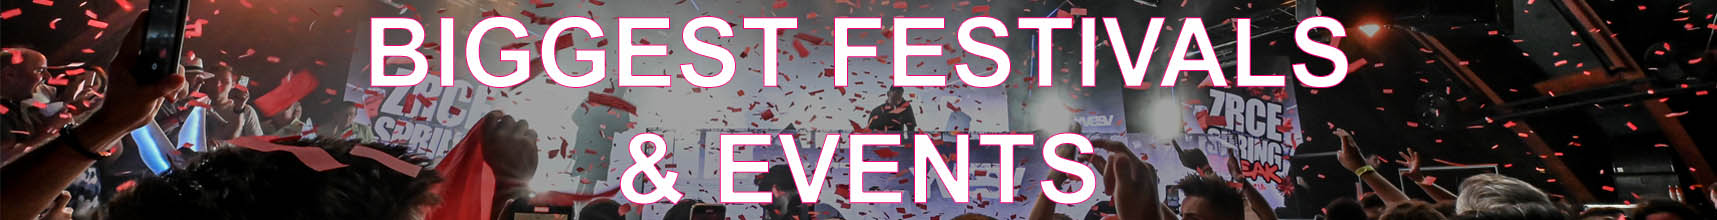 Biggest Festivals & Events Banner